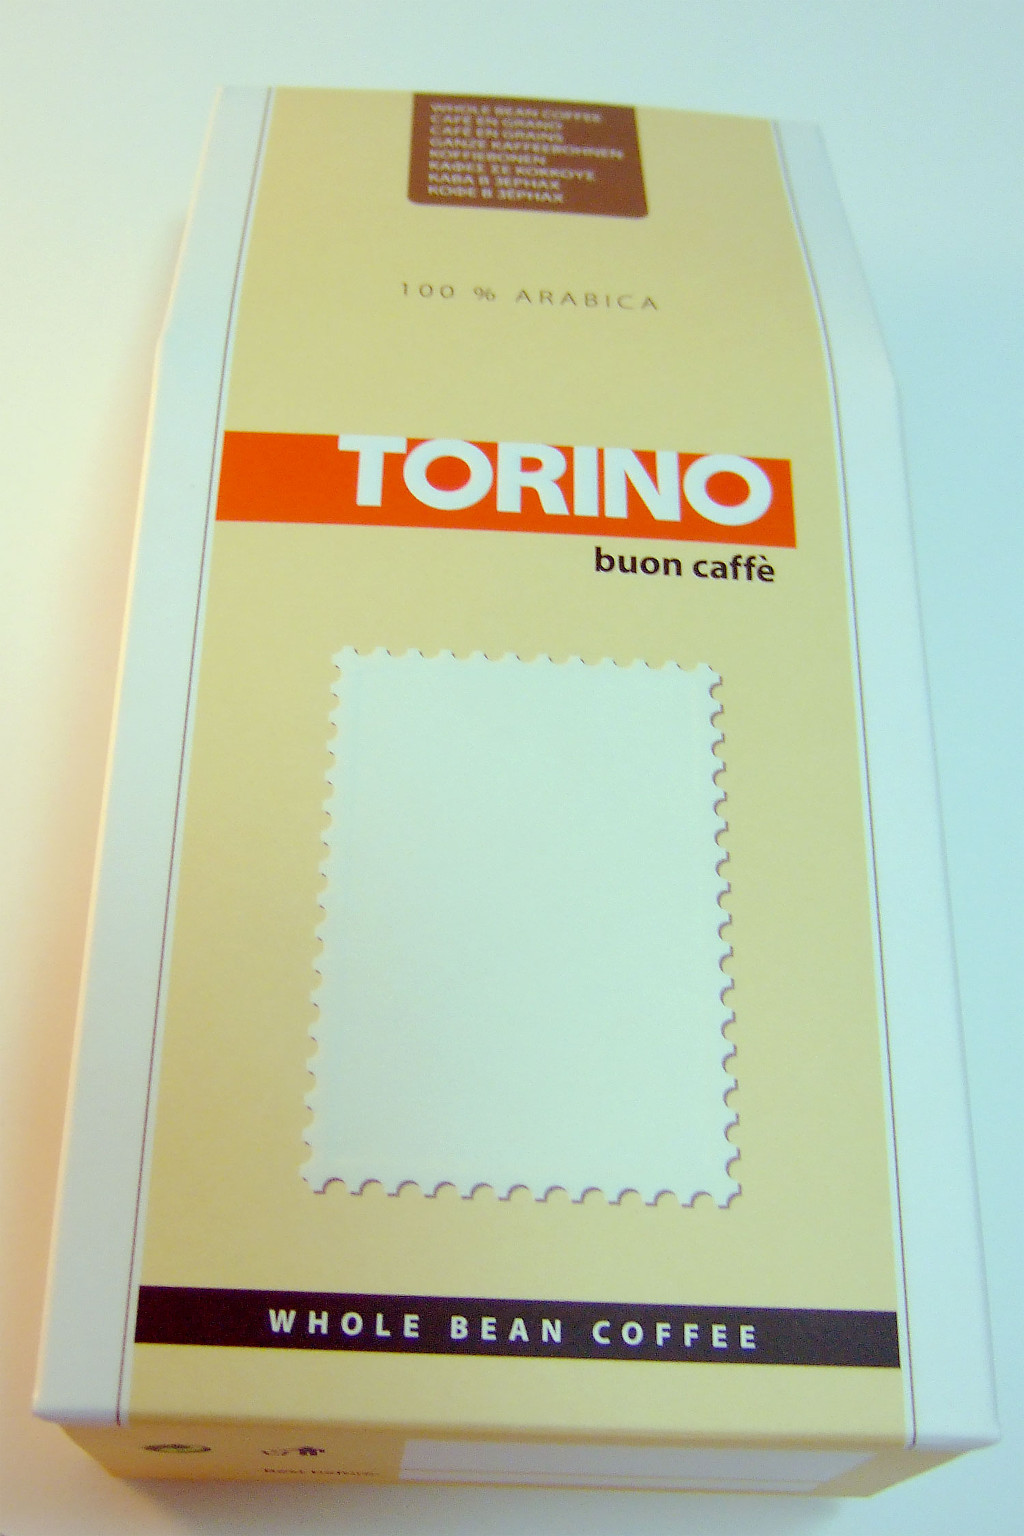 Печать упаковки «Torino». Полиграфия типографии Макрос, изготовление упаковки, спецификация 971993-1